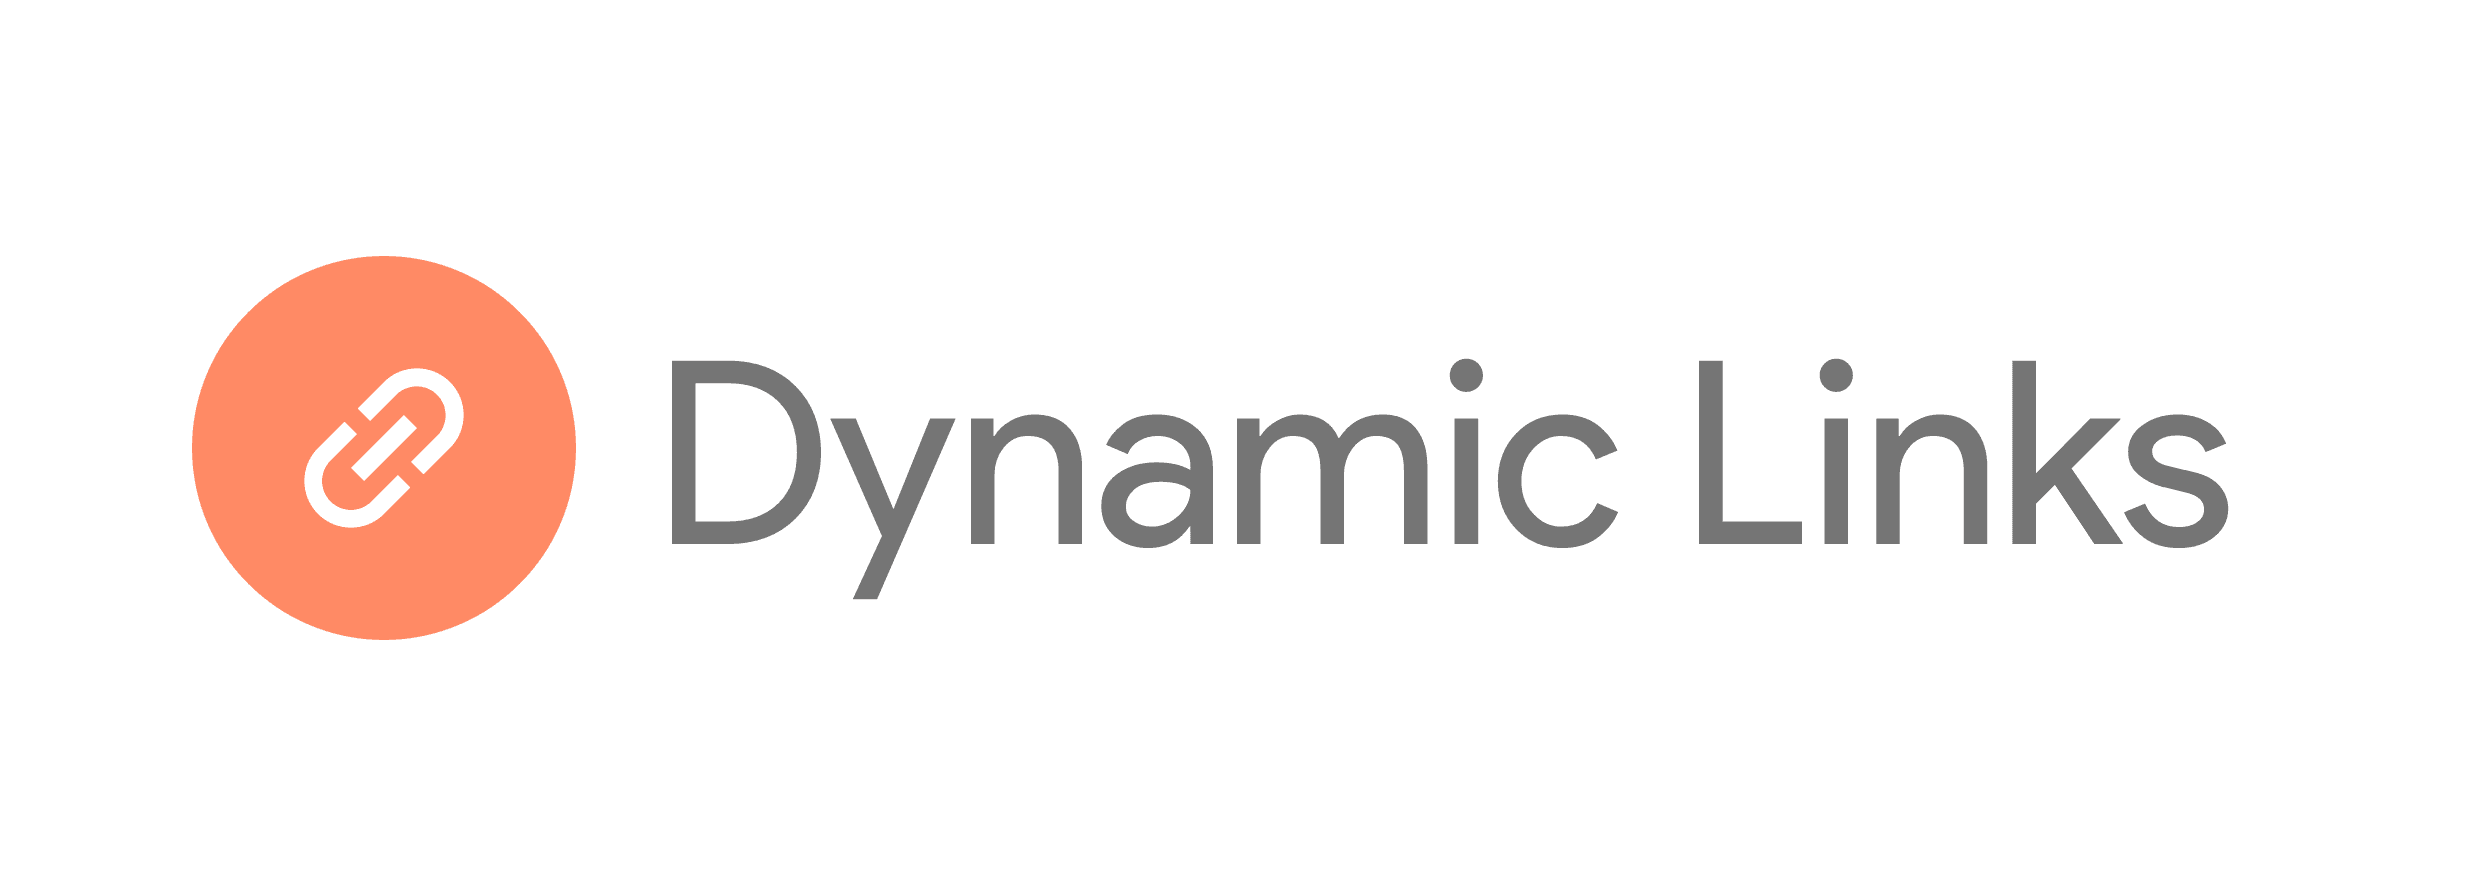 Firebase Dynamic Links.png